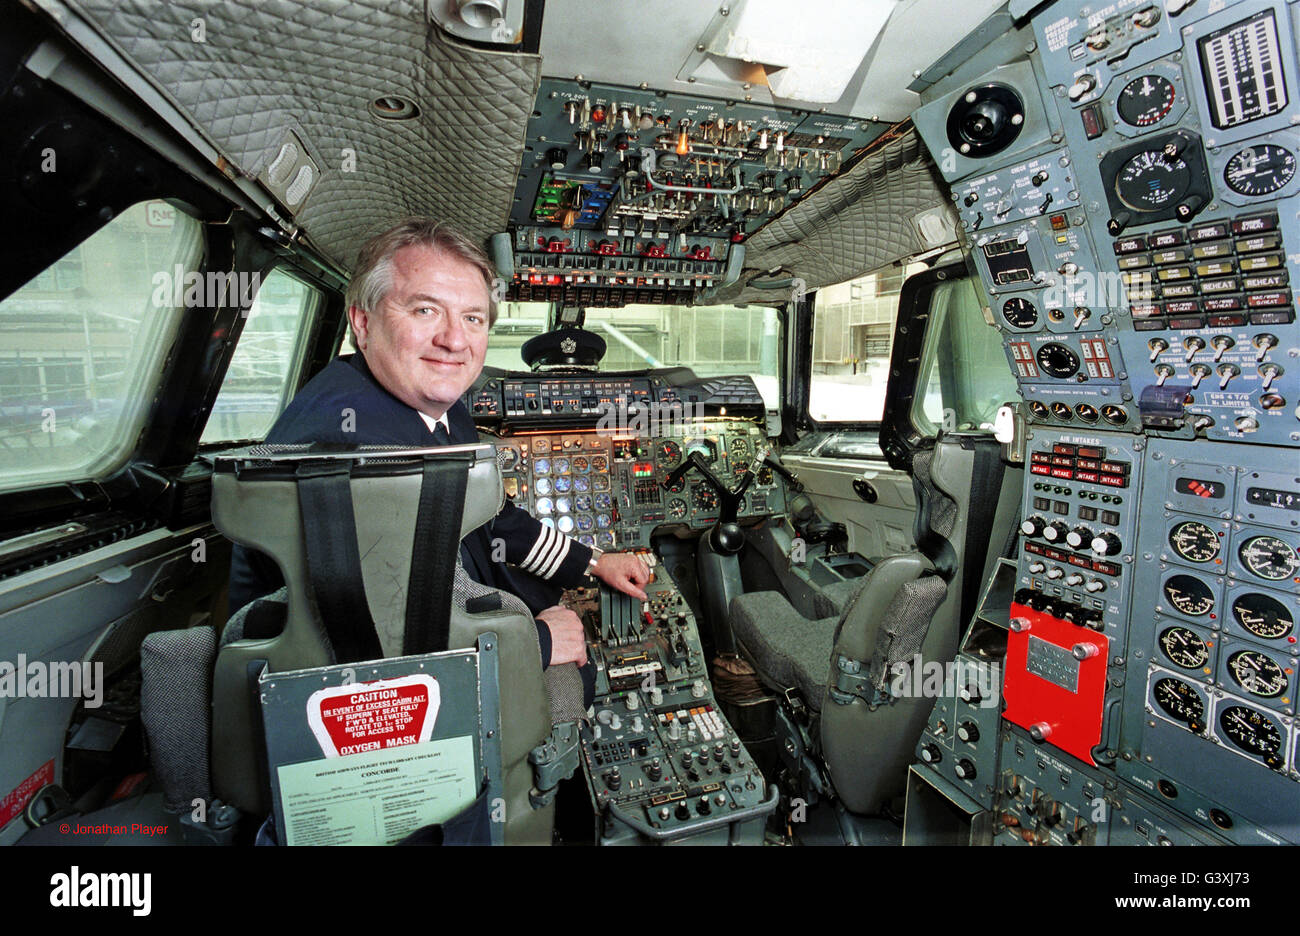 CONCORDE. British Airways pilote Concorde senior et directeur des opérations pour le Concorde, le Capitaine Mike Bannister, dans le cockpit d'un Concorde en train d'être modifié dans un hangar à l'aéroport de Heathrow, Londres, 23 mars 2001. Banque D'Images